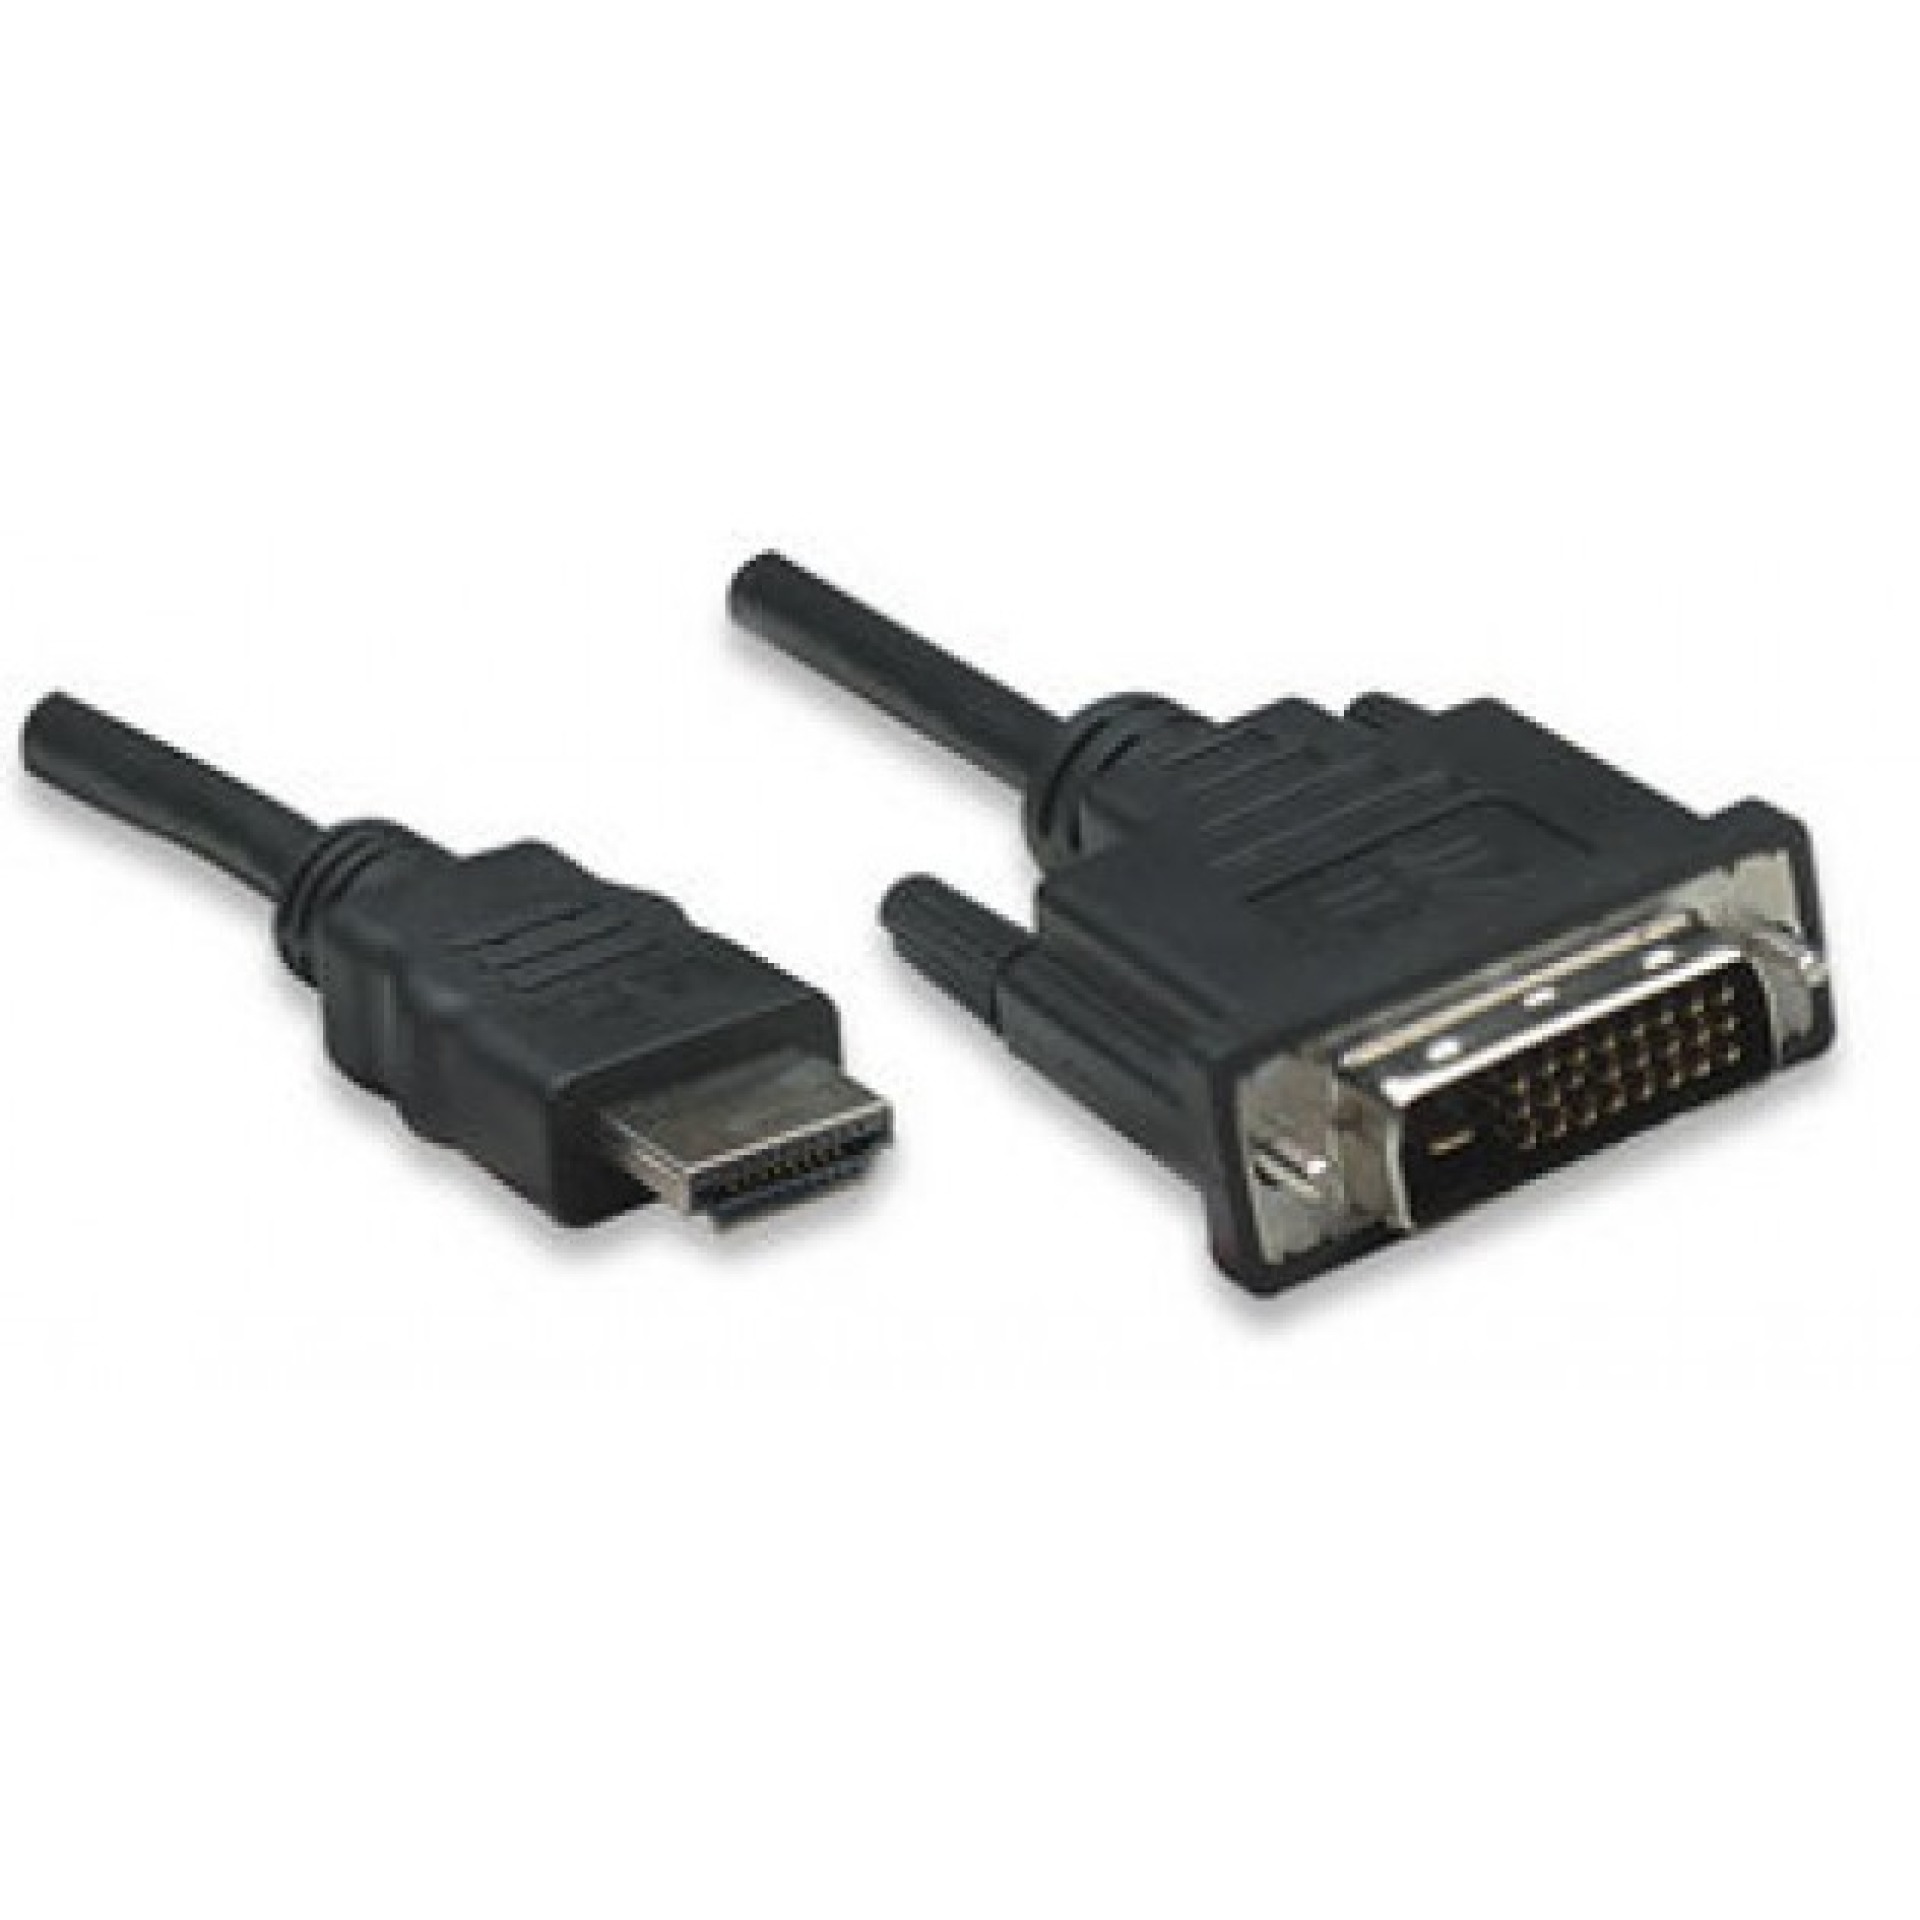 HDMI zu DVI-D Anschlusskabel, schwarz, 5 m